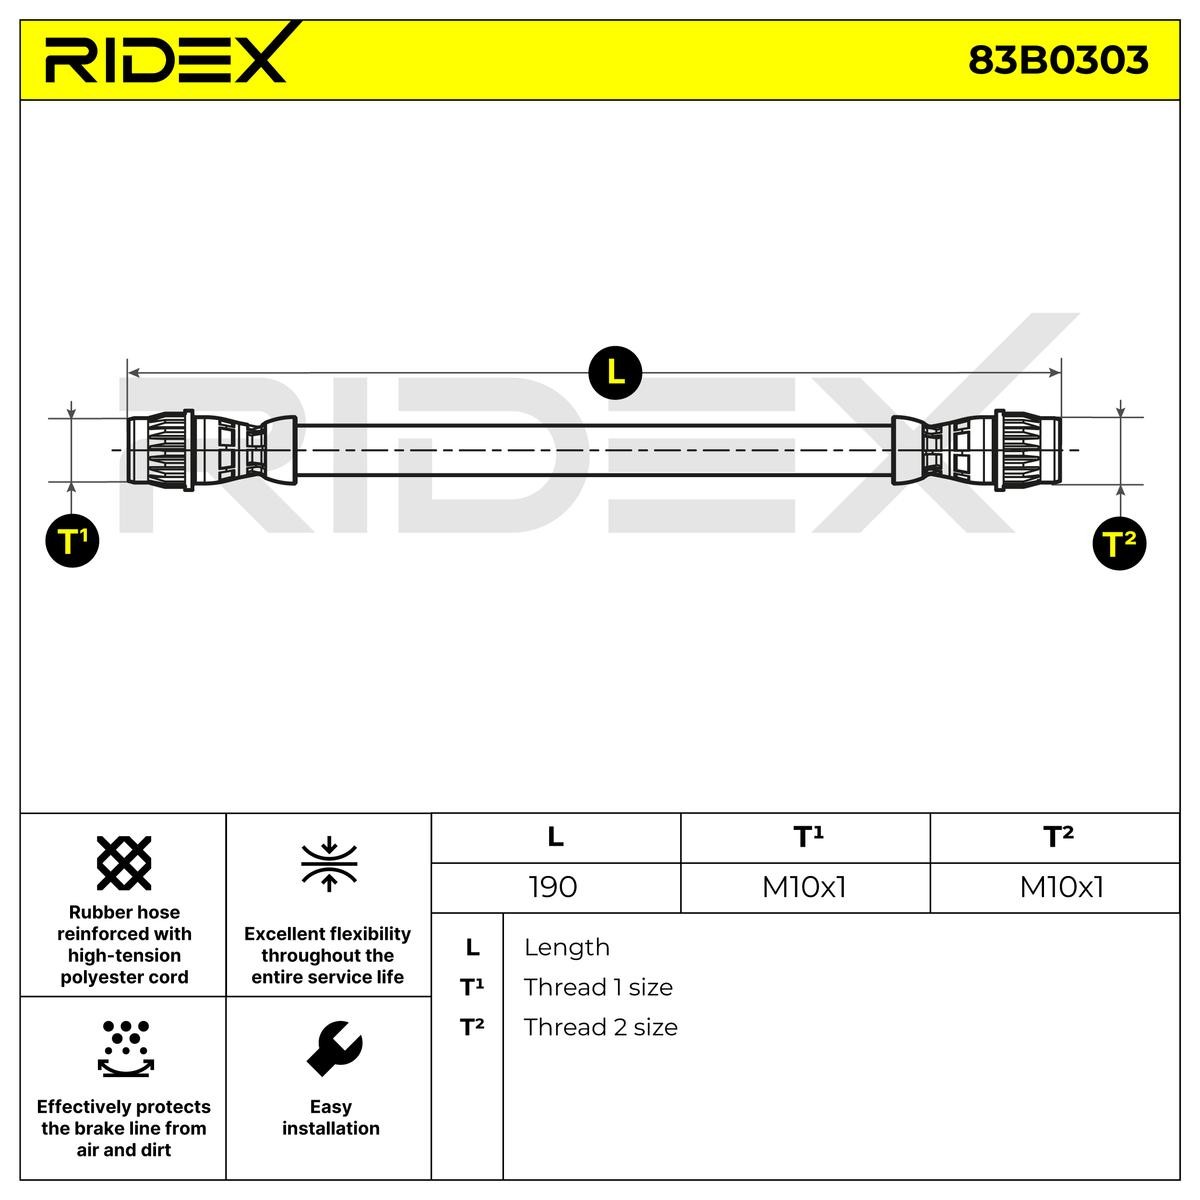 RIDEX 83B0303 Brake hose Rear Axle both sides, 190 mm, Internal Thread